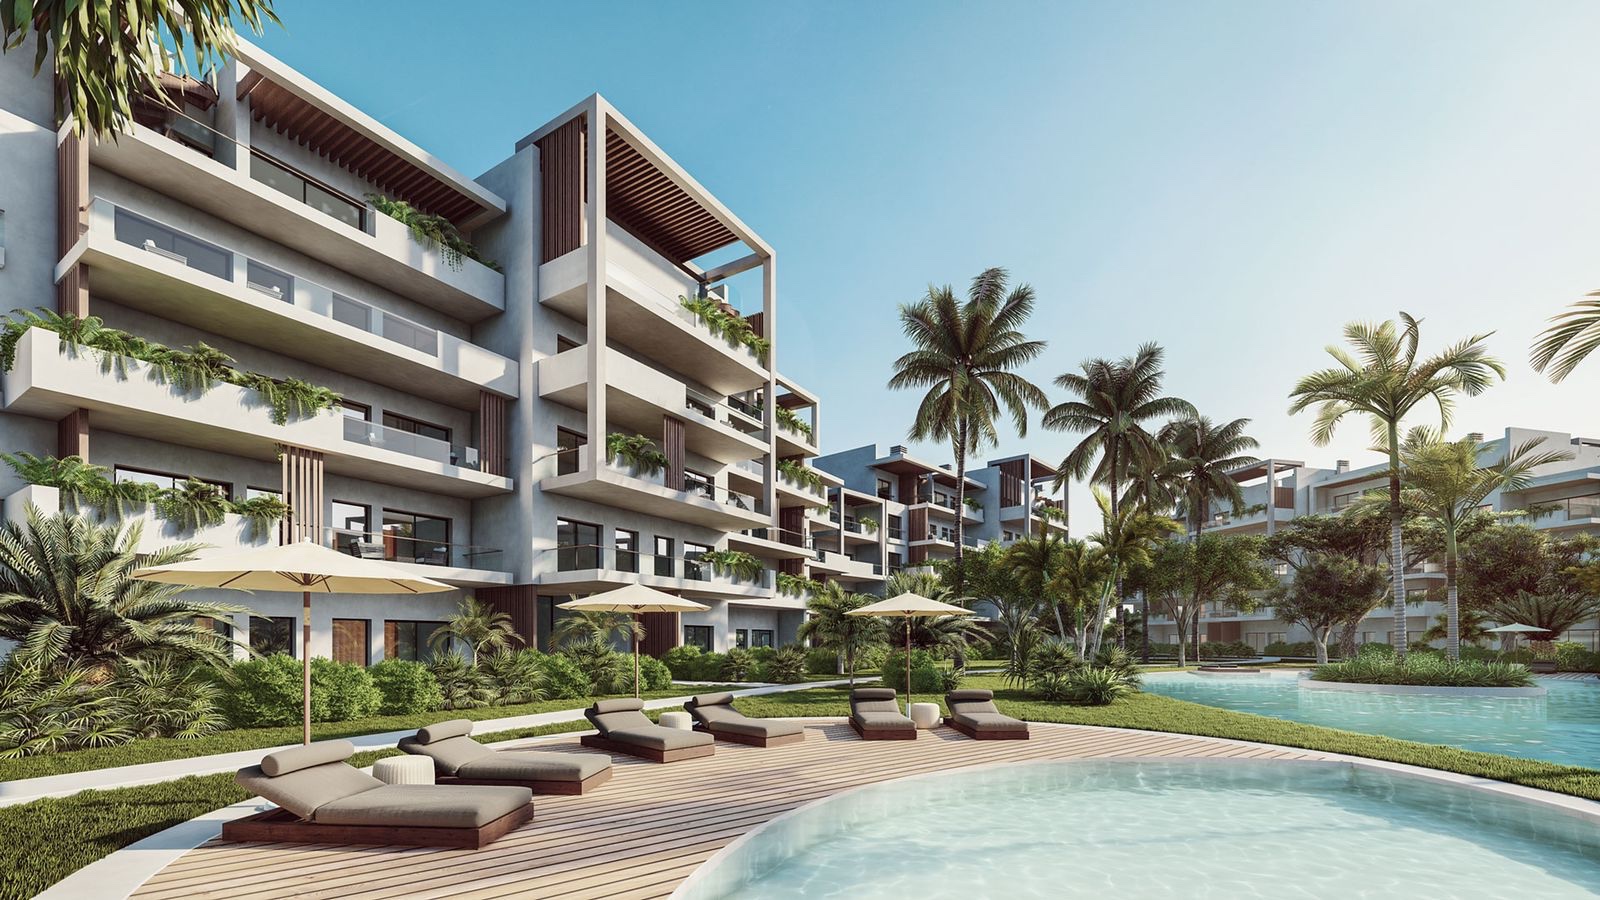 apartamentos - Venta de apartamentos en punta cana zona turística República Dominicana 